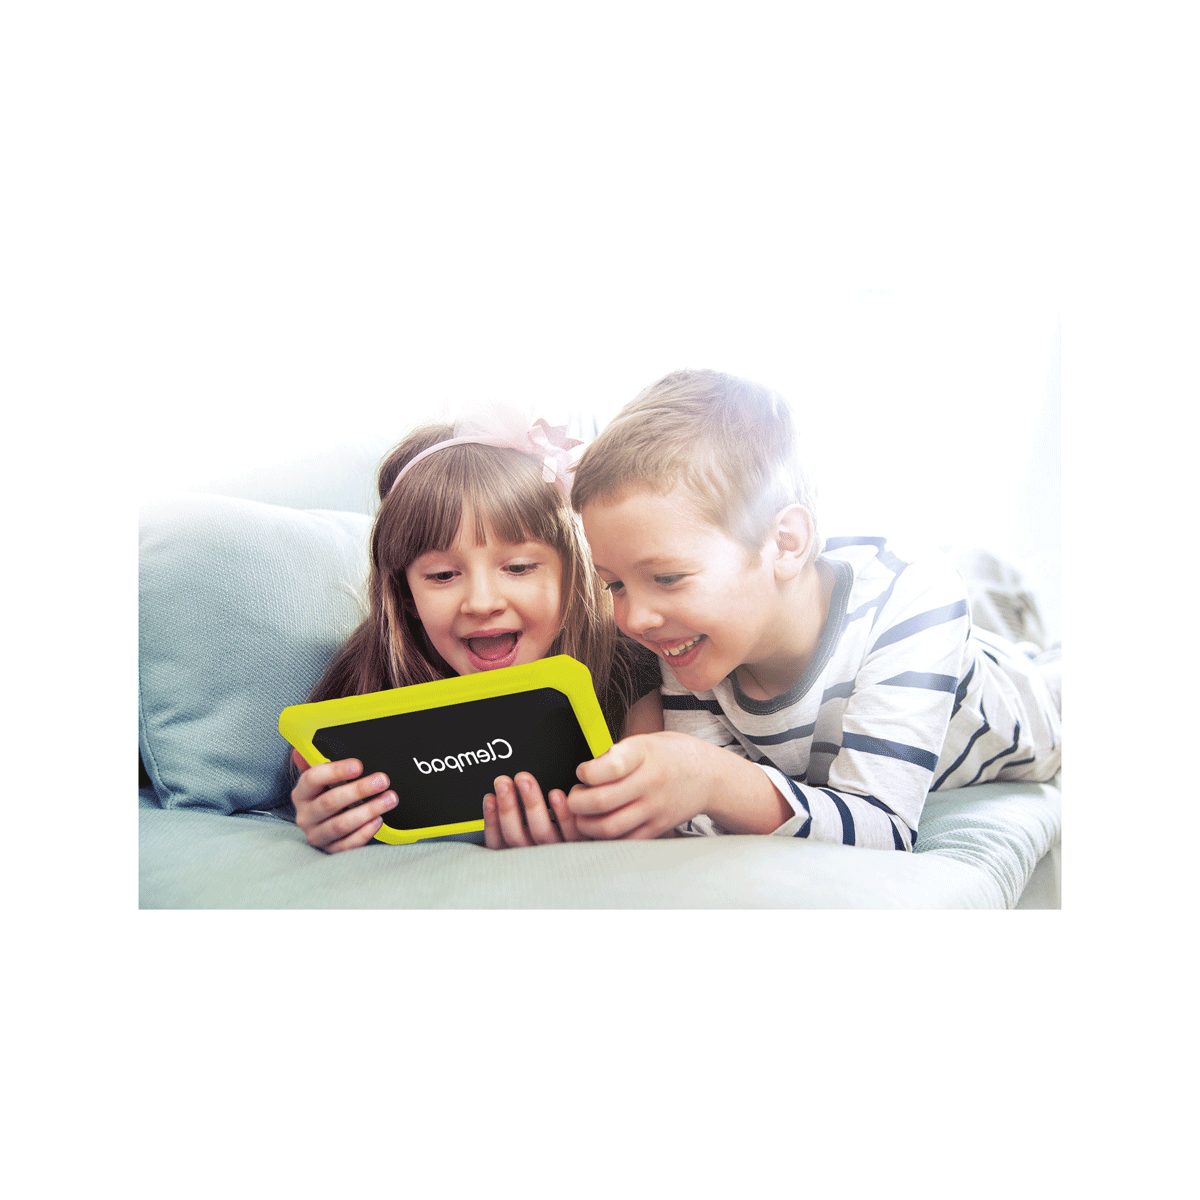 Clementoni - clempad 8 pro, tablet per bambini 6-12 anni - Toys